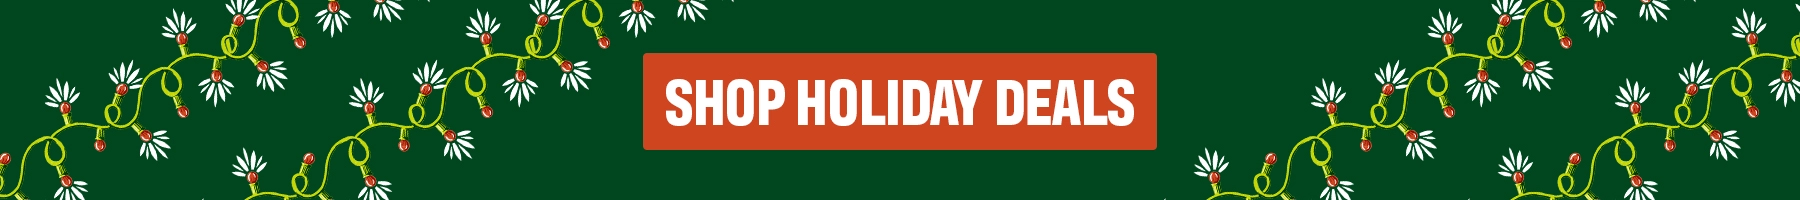 Holiday Blog Holiday Deals CTA